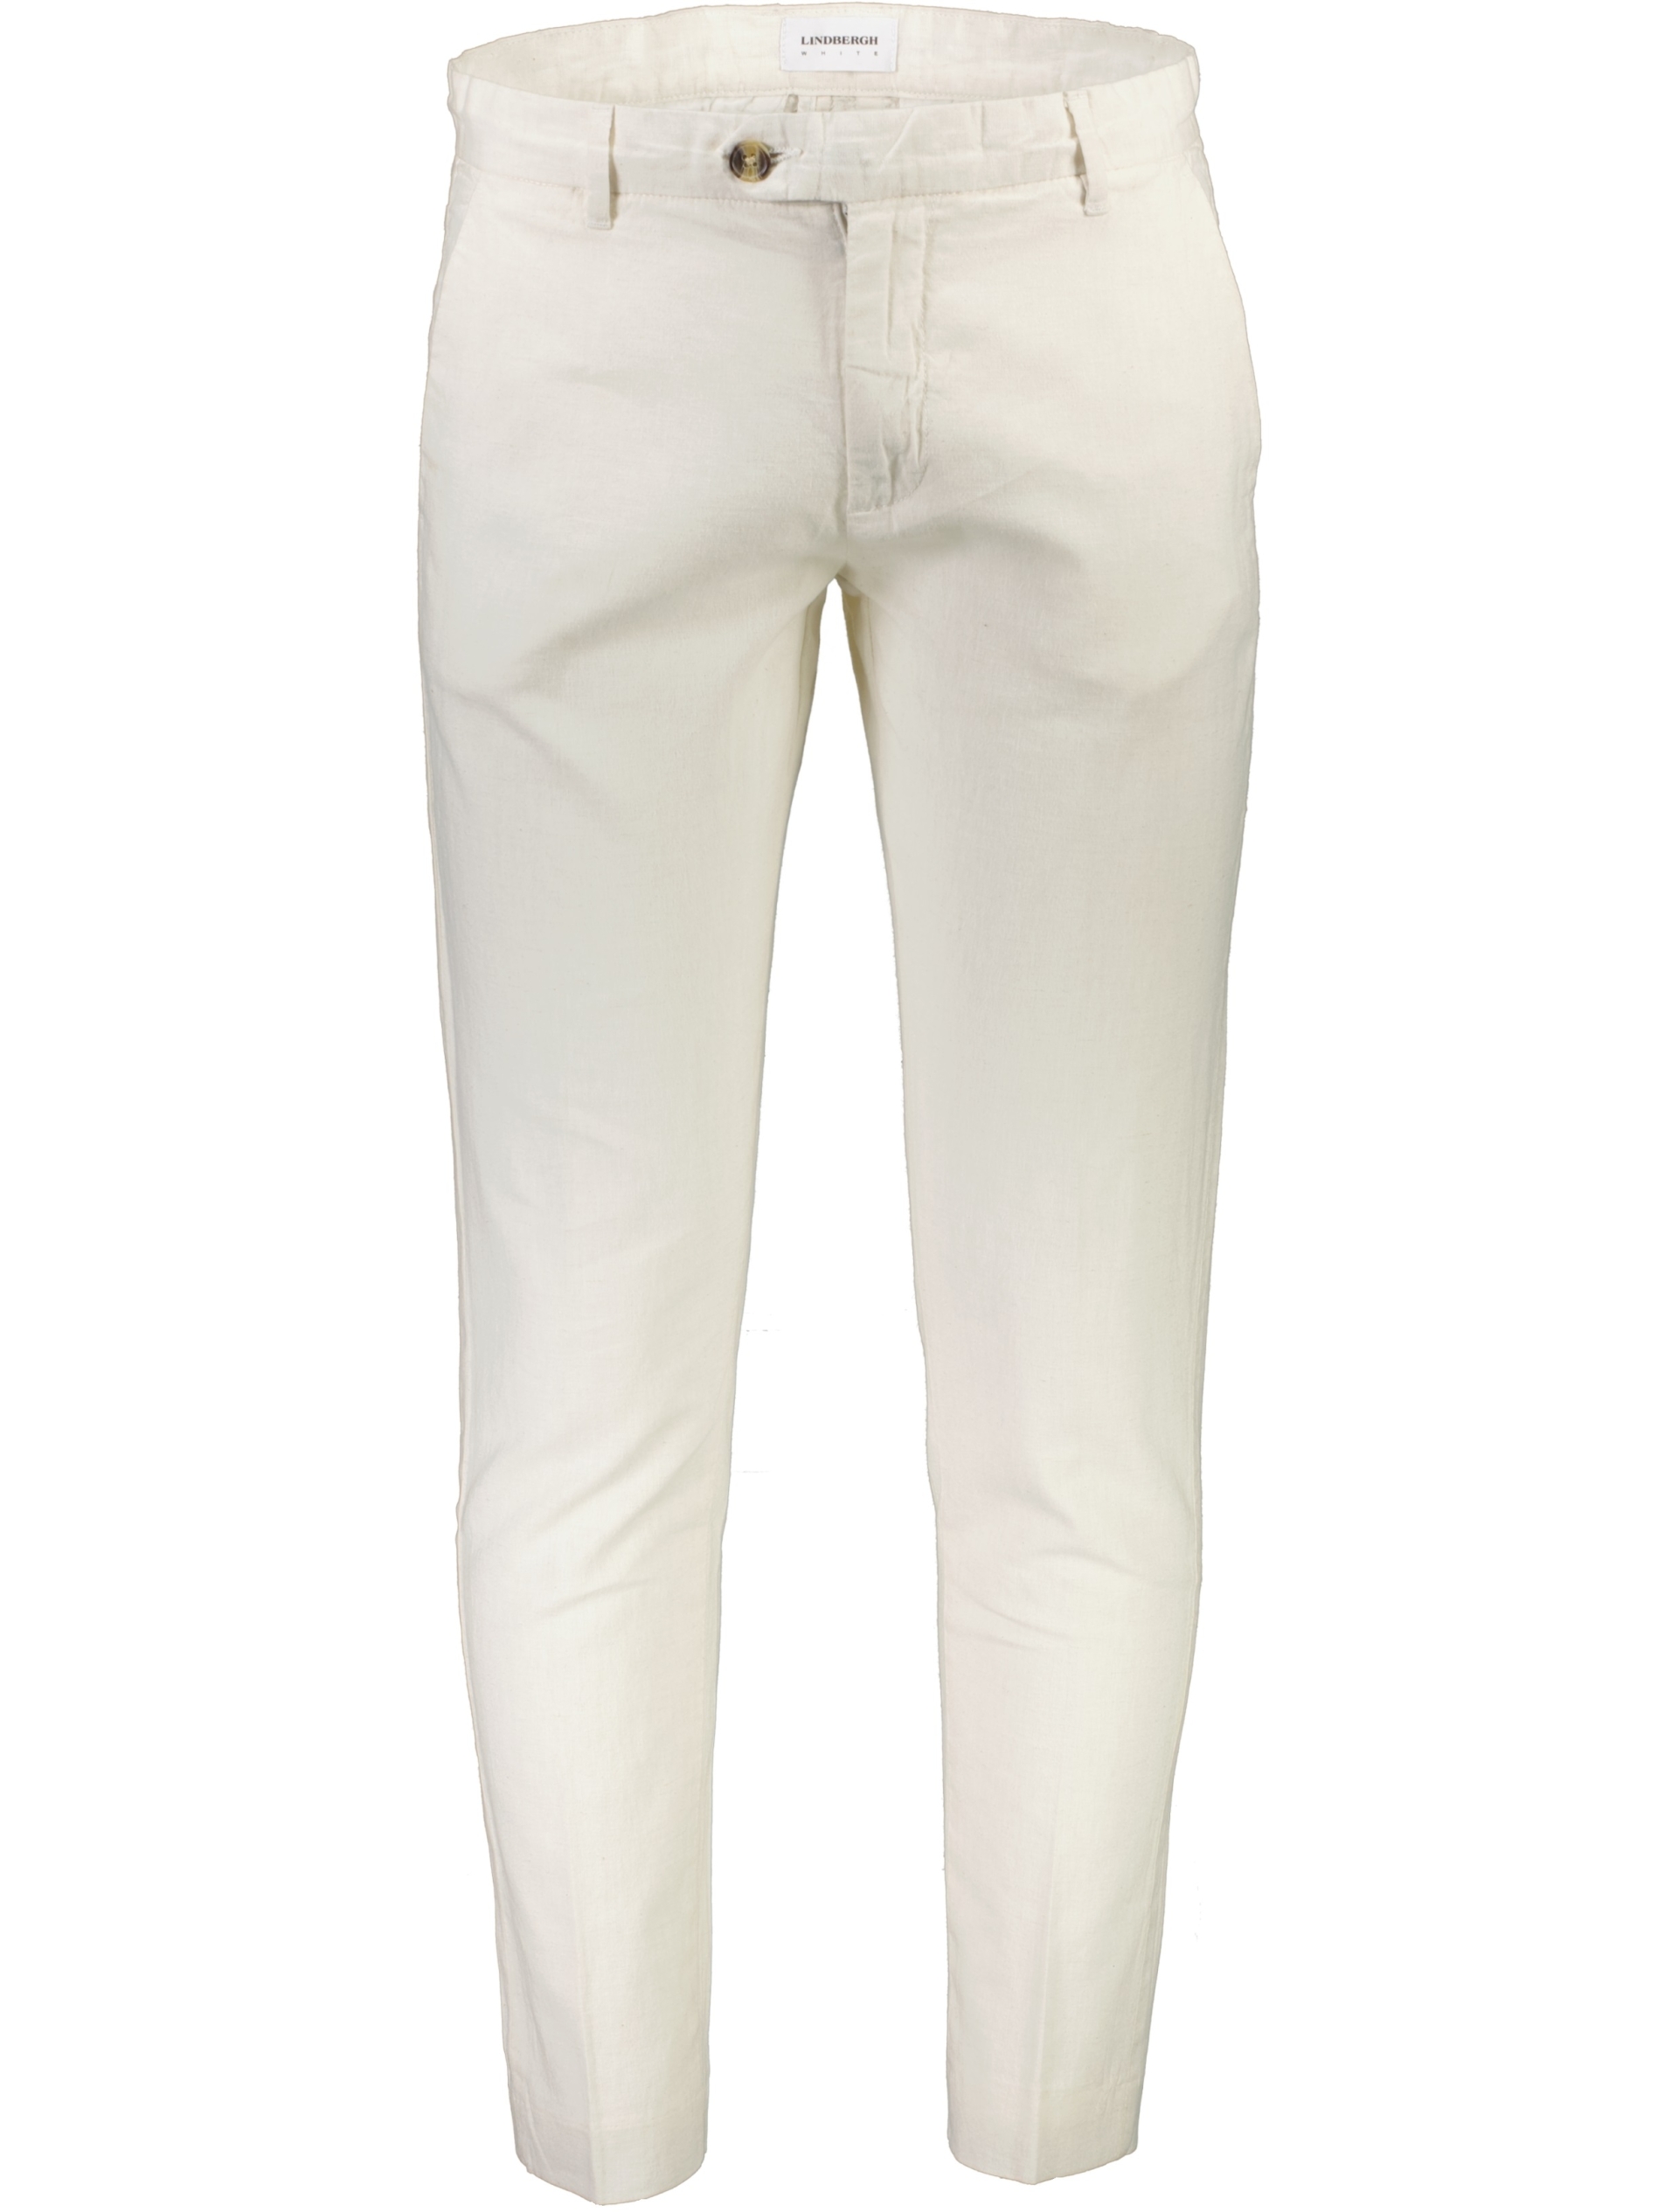 Lindbergh Casual bukser hvid / white